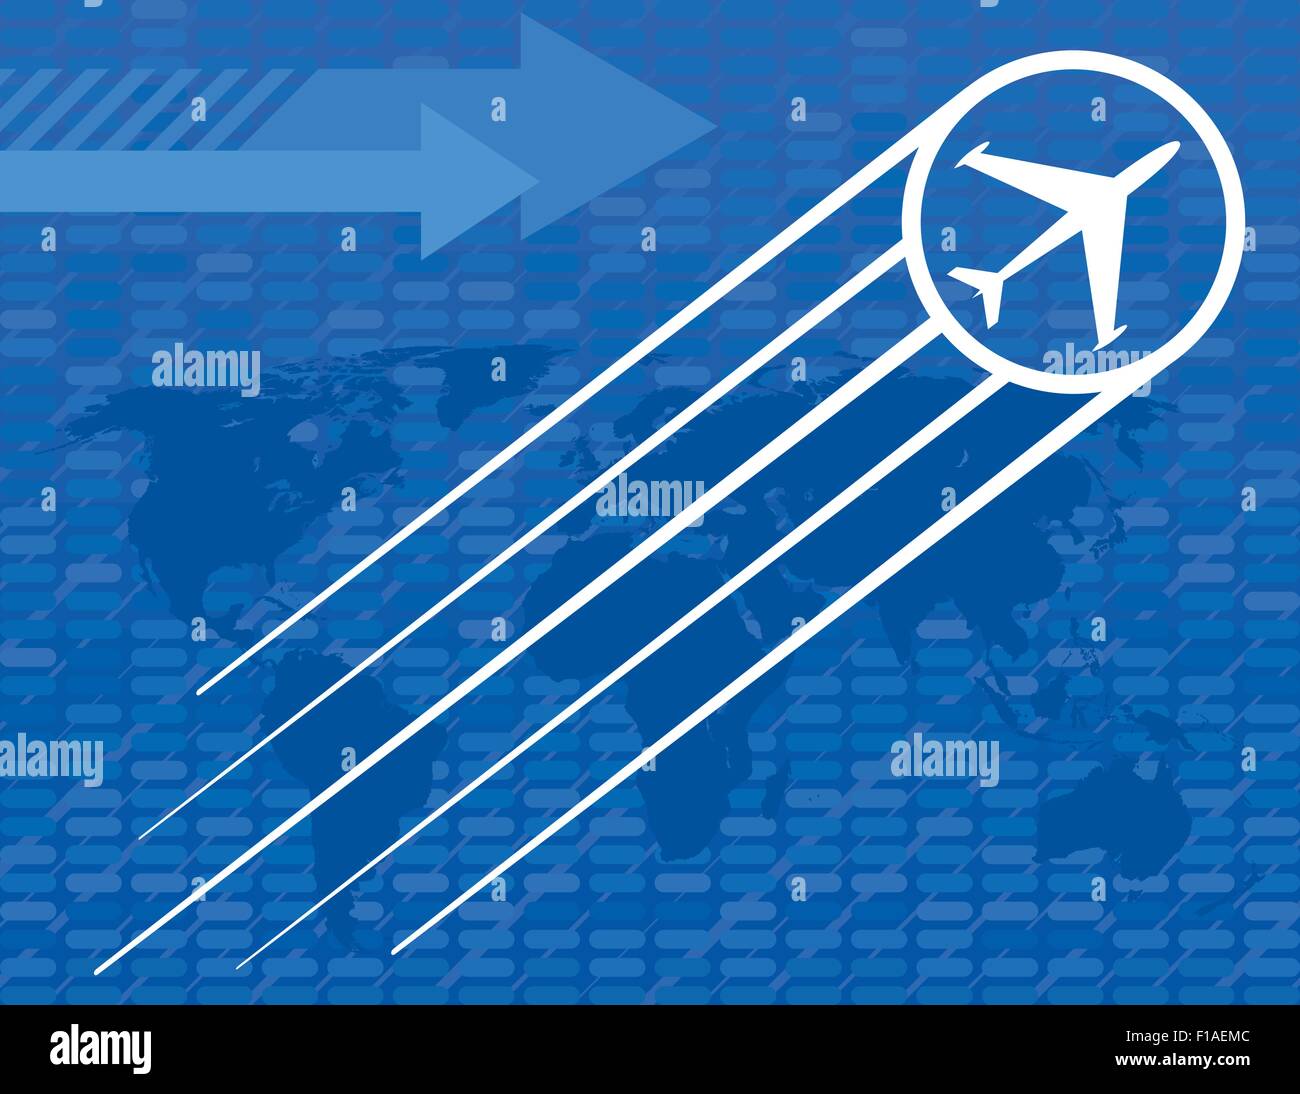 Blaue Flugzeug reisen Hintergrund mit Pfeilen und einer Weltkarte Stock Vektor